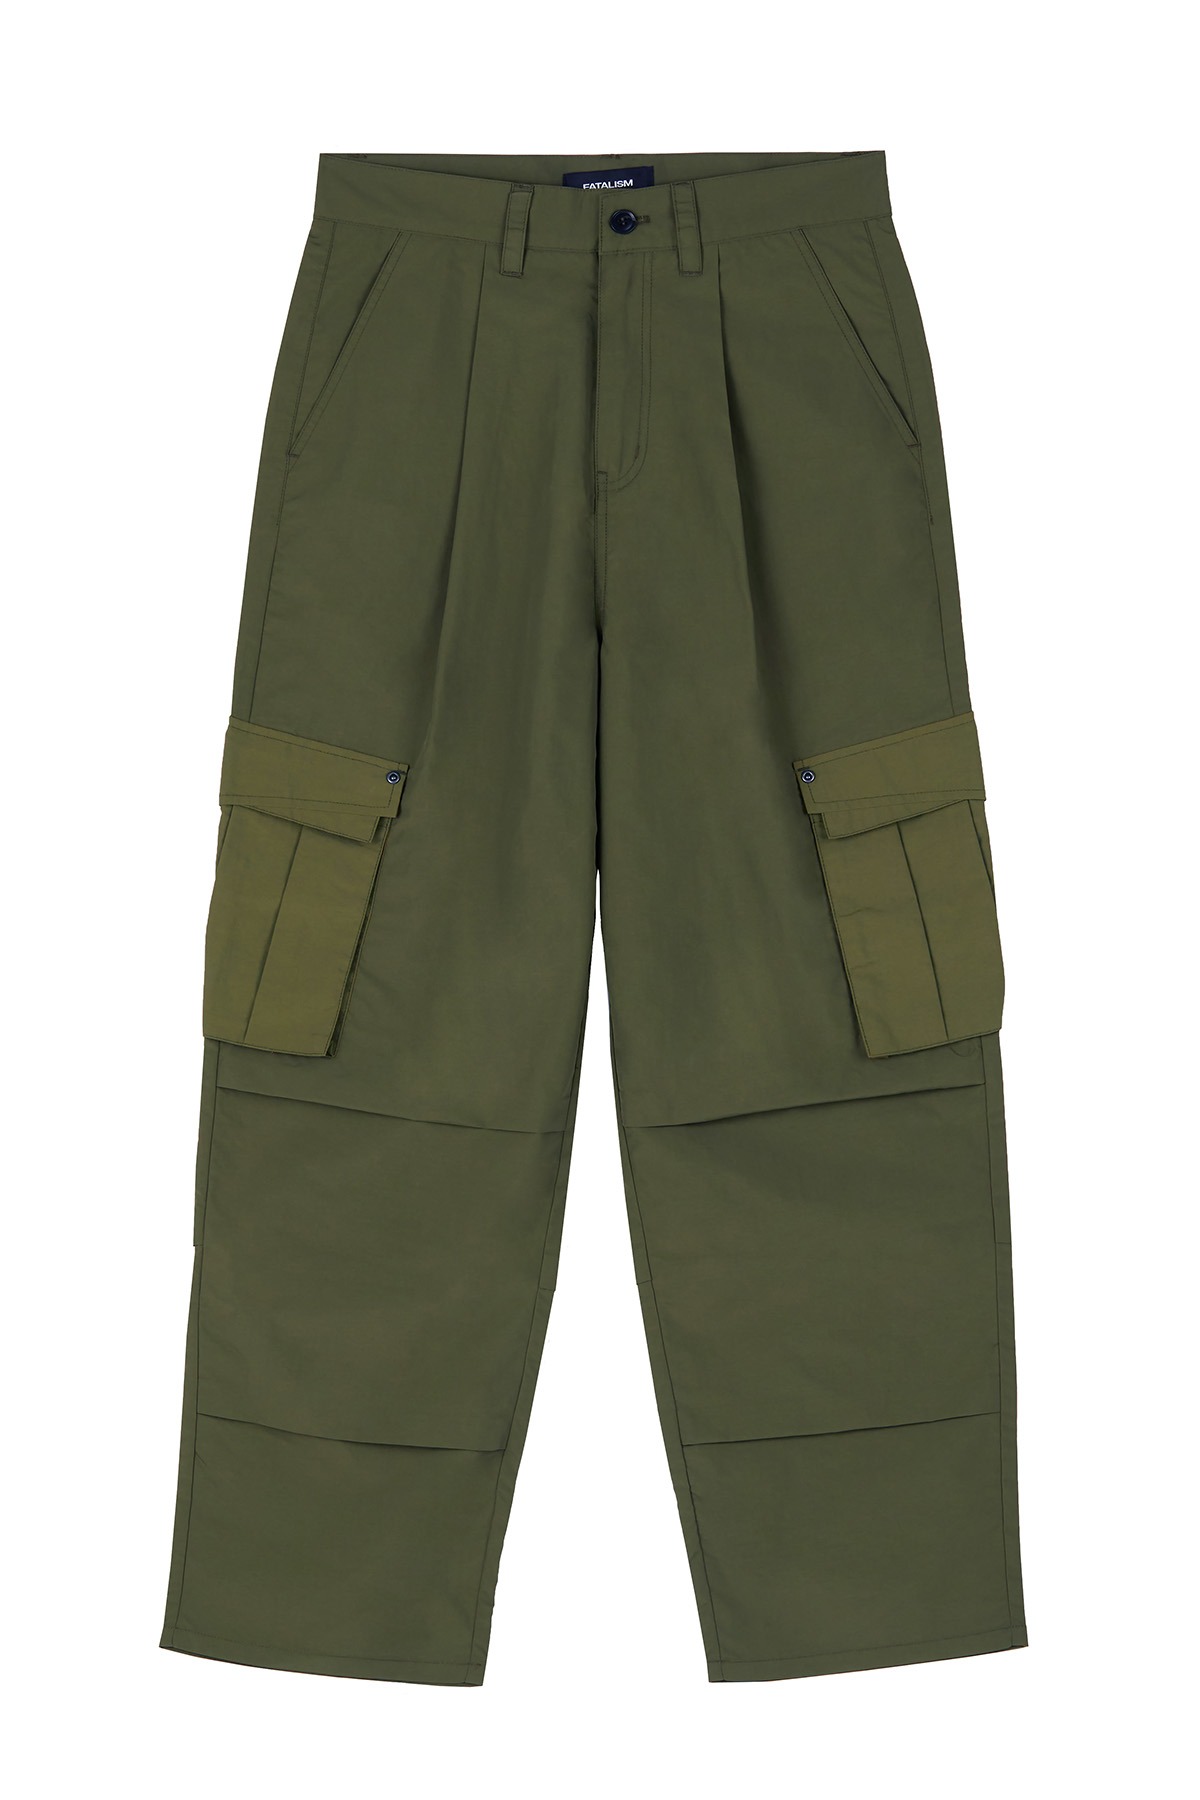 [06/28 예약배송] #0350 Military cargo pants khaki